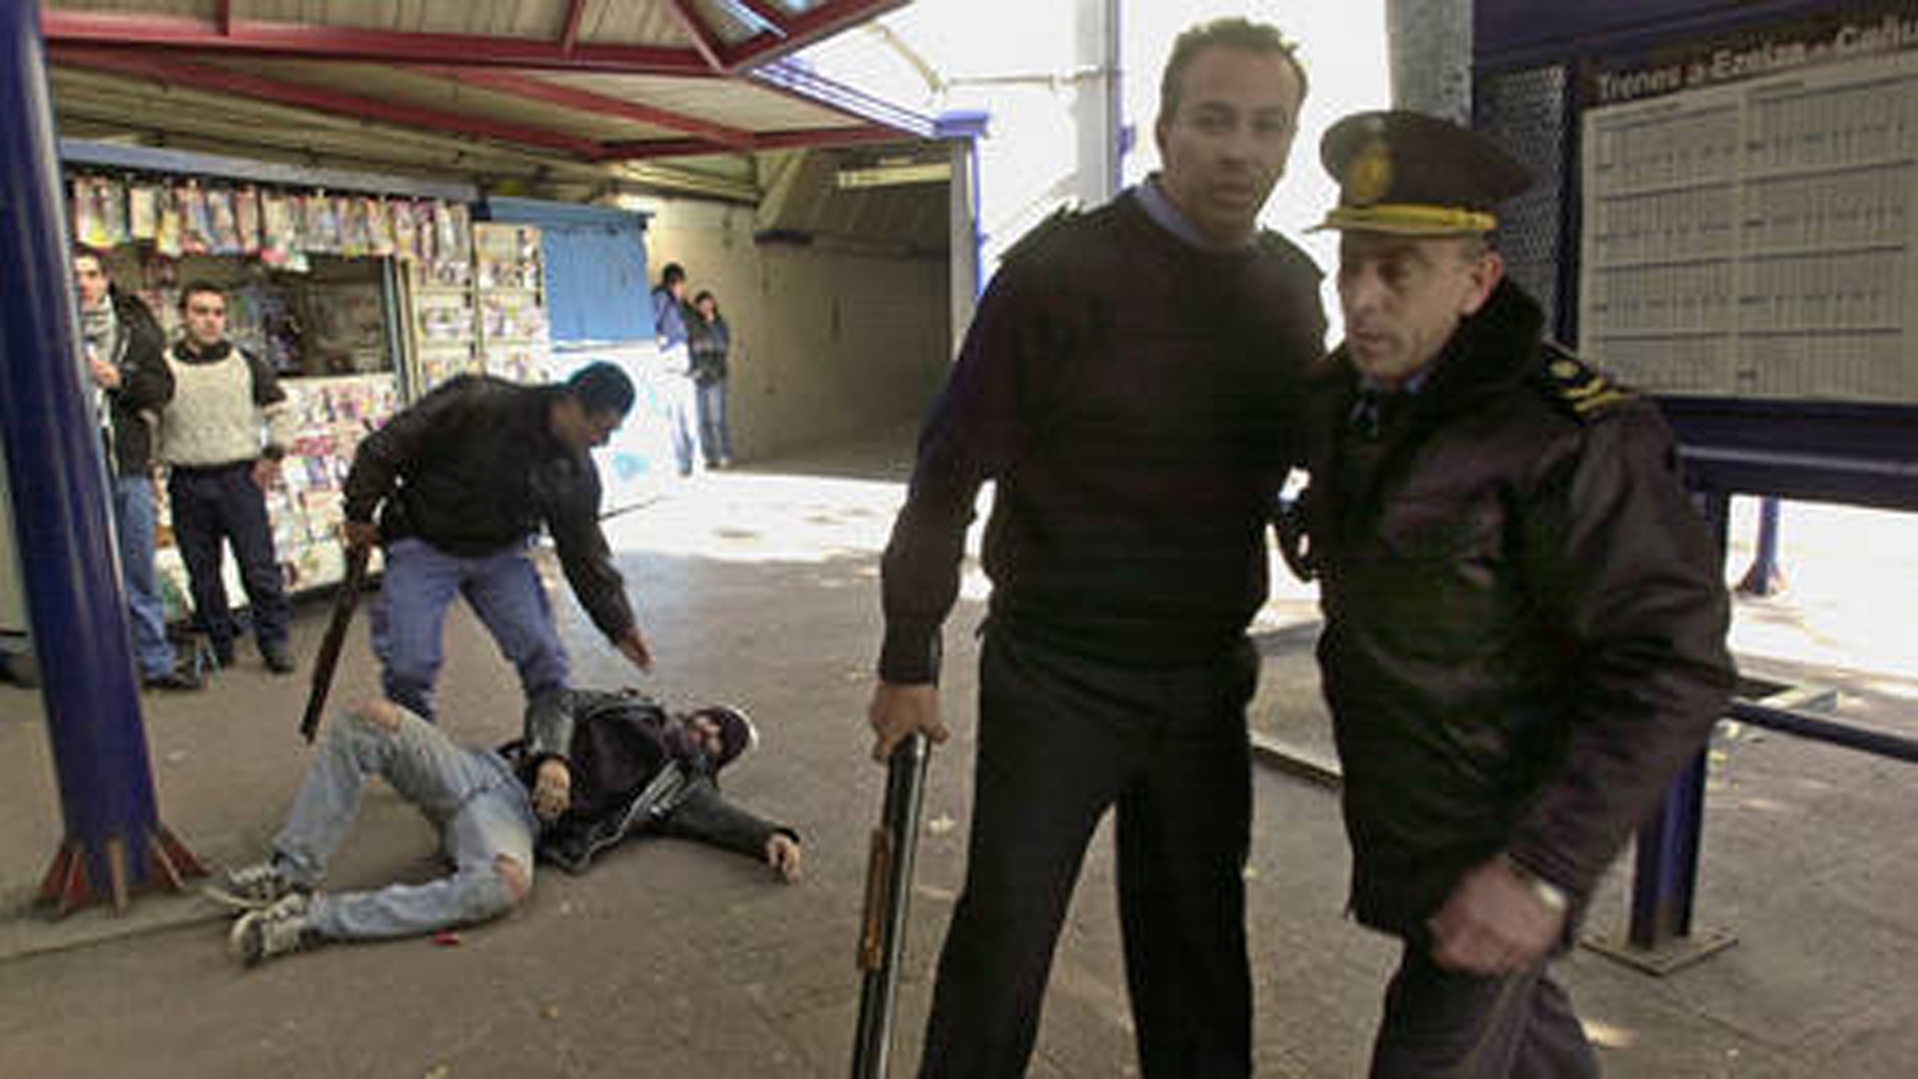 Darío Santillán agoniza en la vereda de la estación Avellaneda. Él y Maximiliano Kosteki fueron baleados por efectivos de la Bonaerense. En primer plano, el comisario Fanchiotti, condenado a cadena perpetua (Foto: Pepe Mateos)